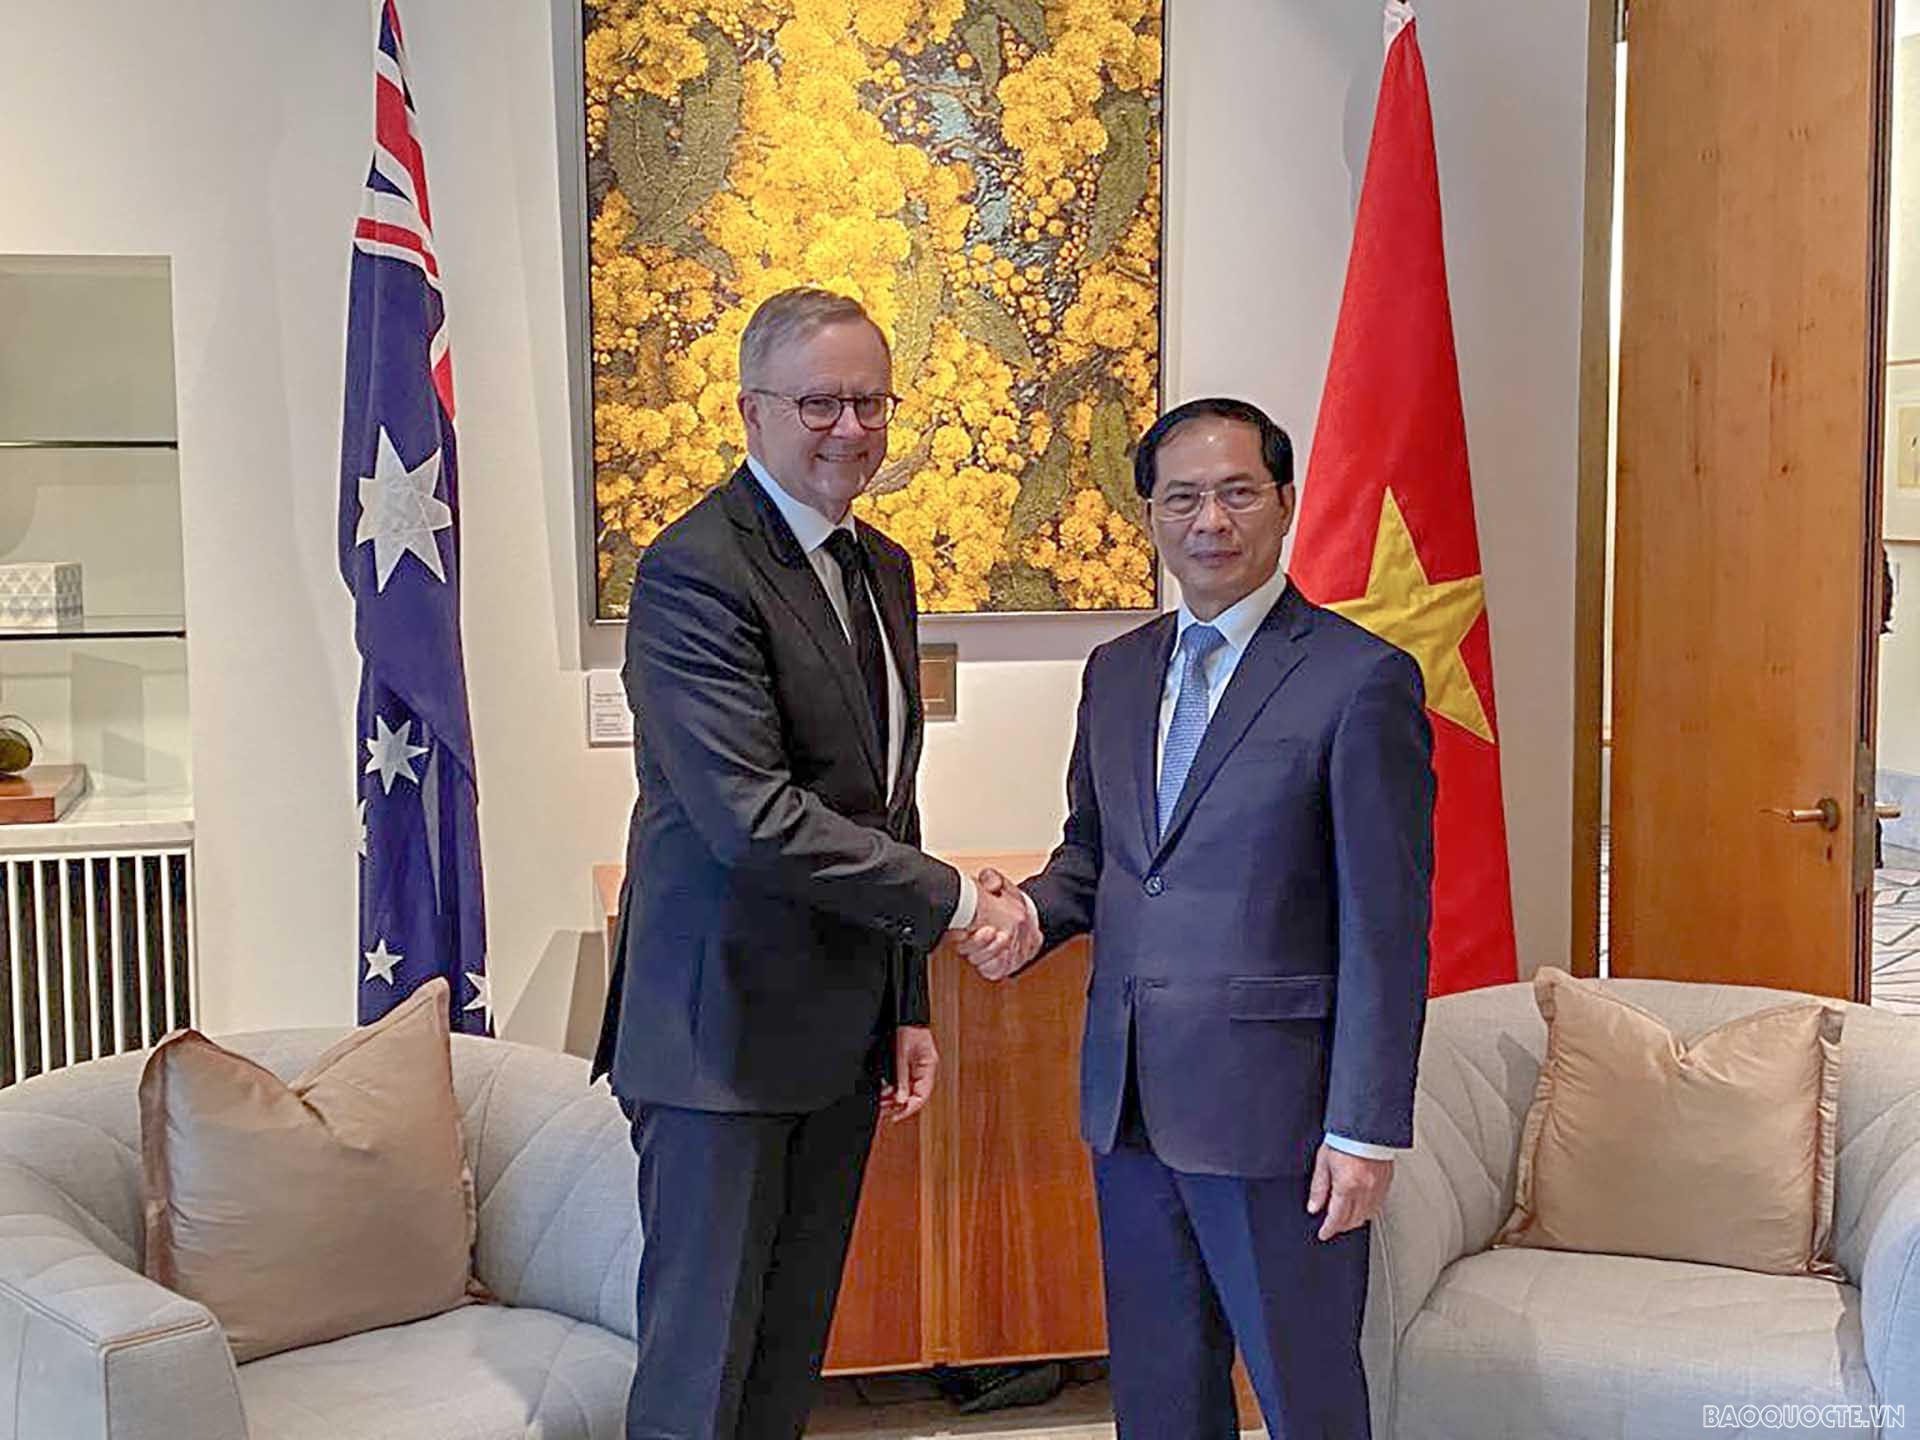 Bộ trưởng Ngoại giao Bùi Thanh Sơn chào xã giao Thủ tướng Australia Anthony Albanese